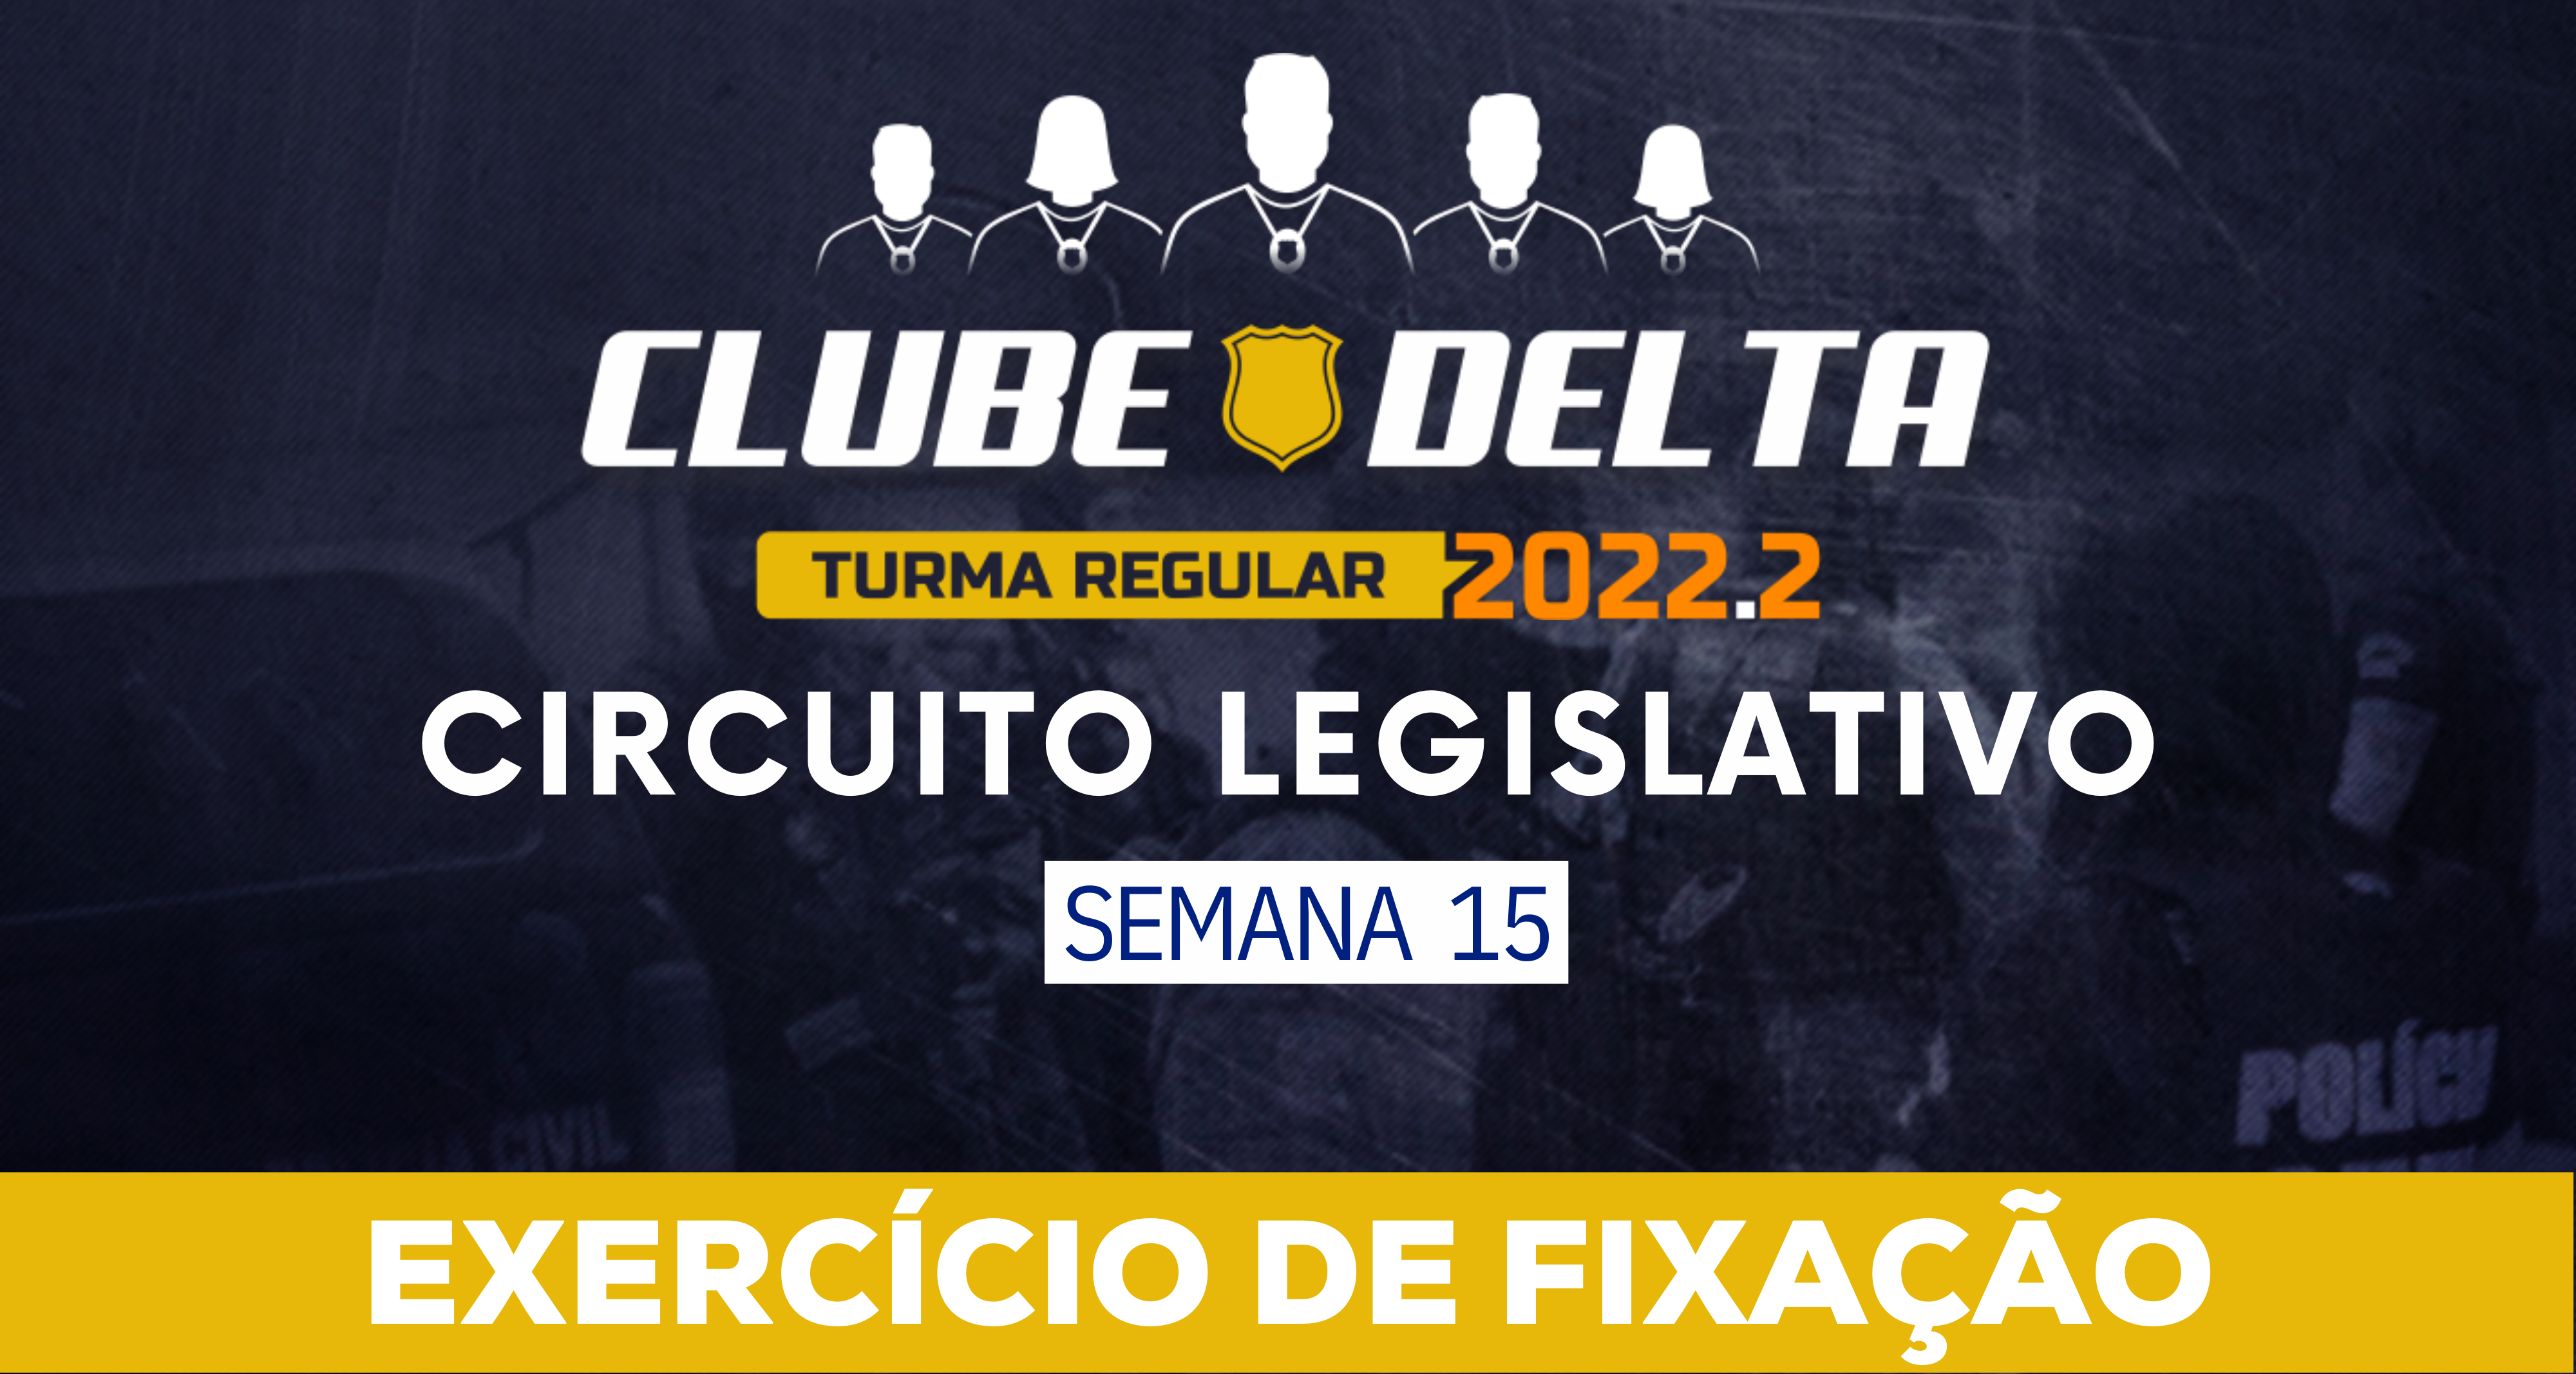 Circuito Legislativo 2022.2 (Clube Delta - Semana 15)